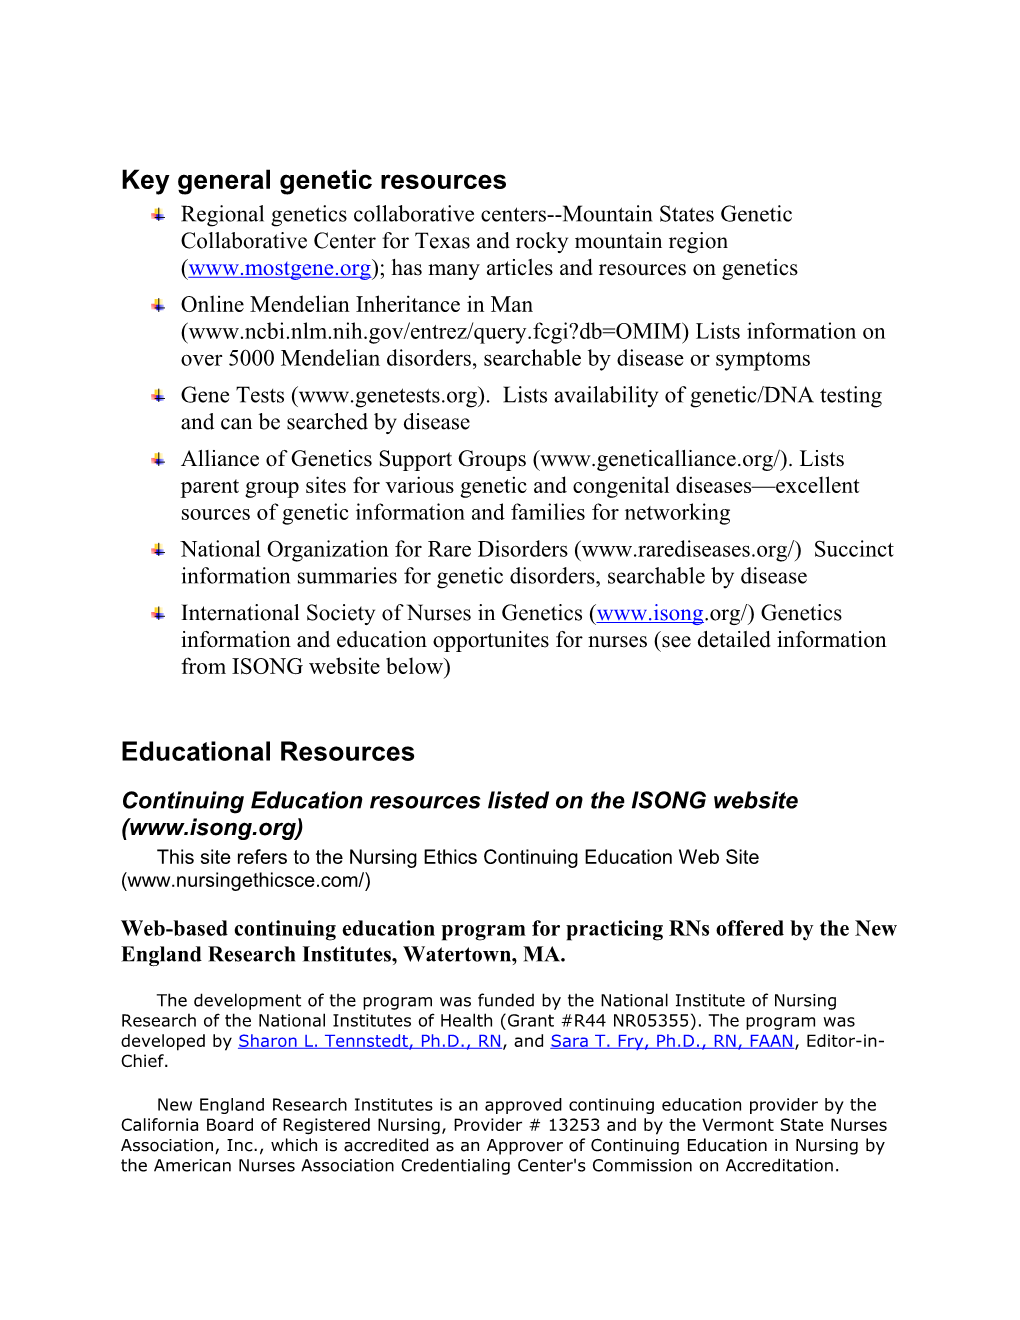 Key General Genetic Resources